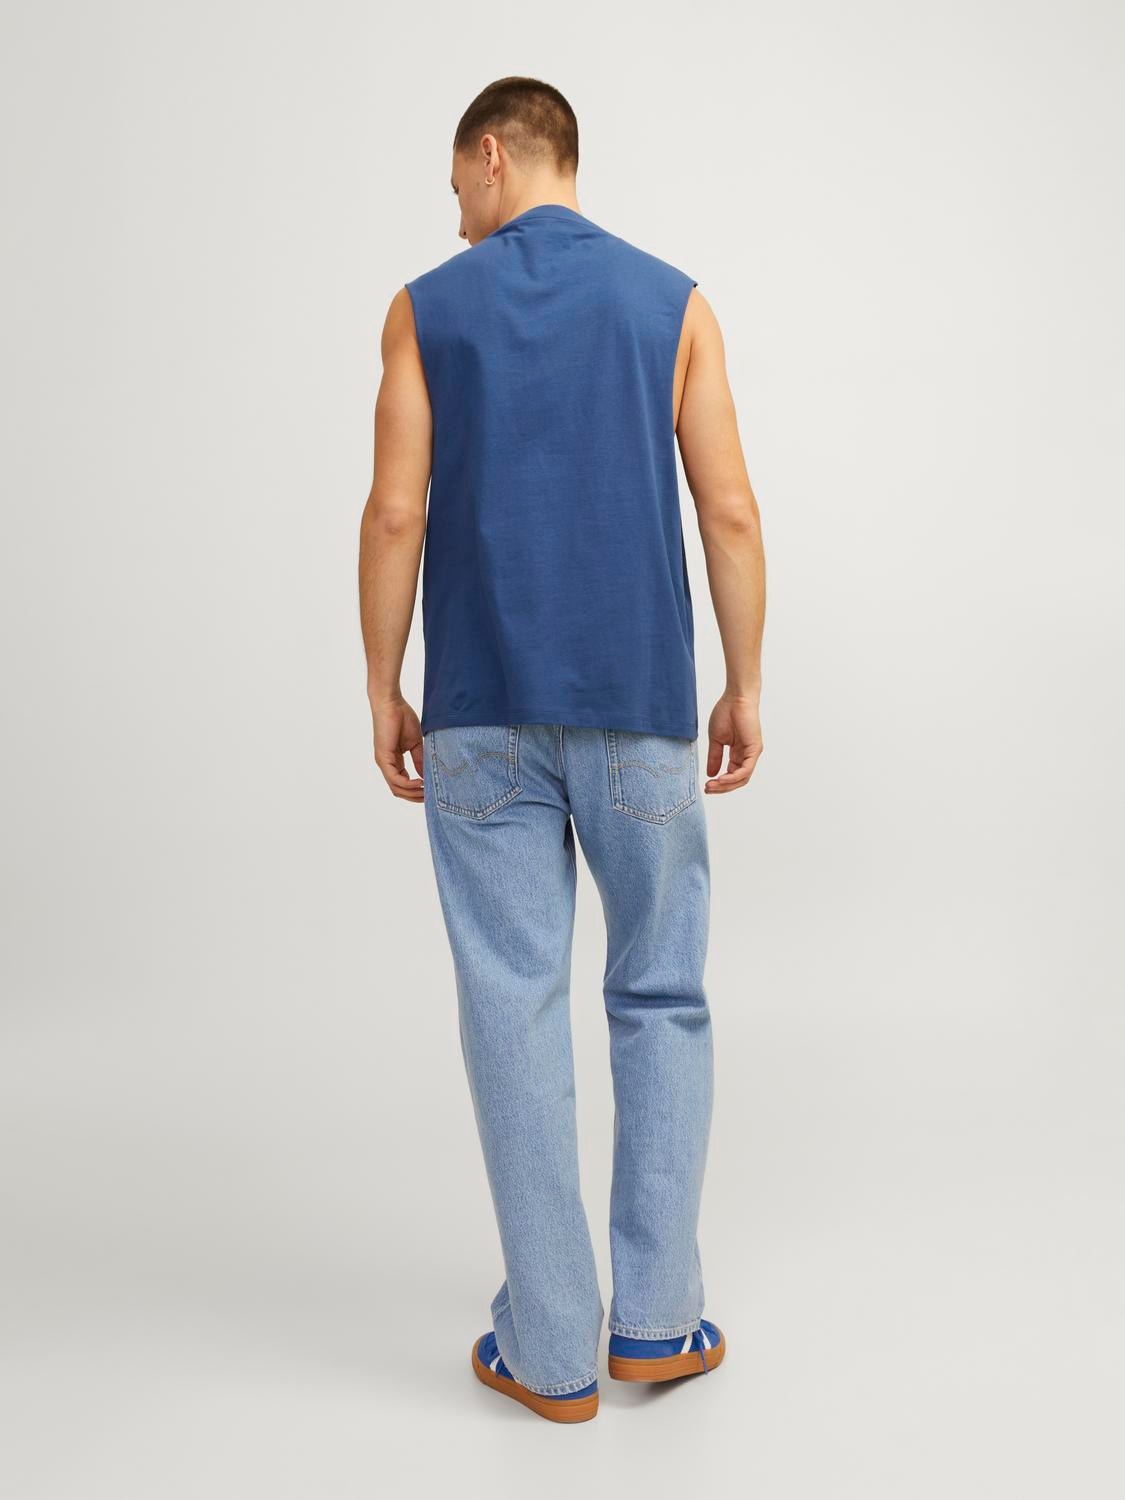 Jack & Jones Camiseta Estampado Cuello redondo -Ensign Blue - 12249131